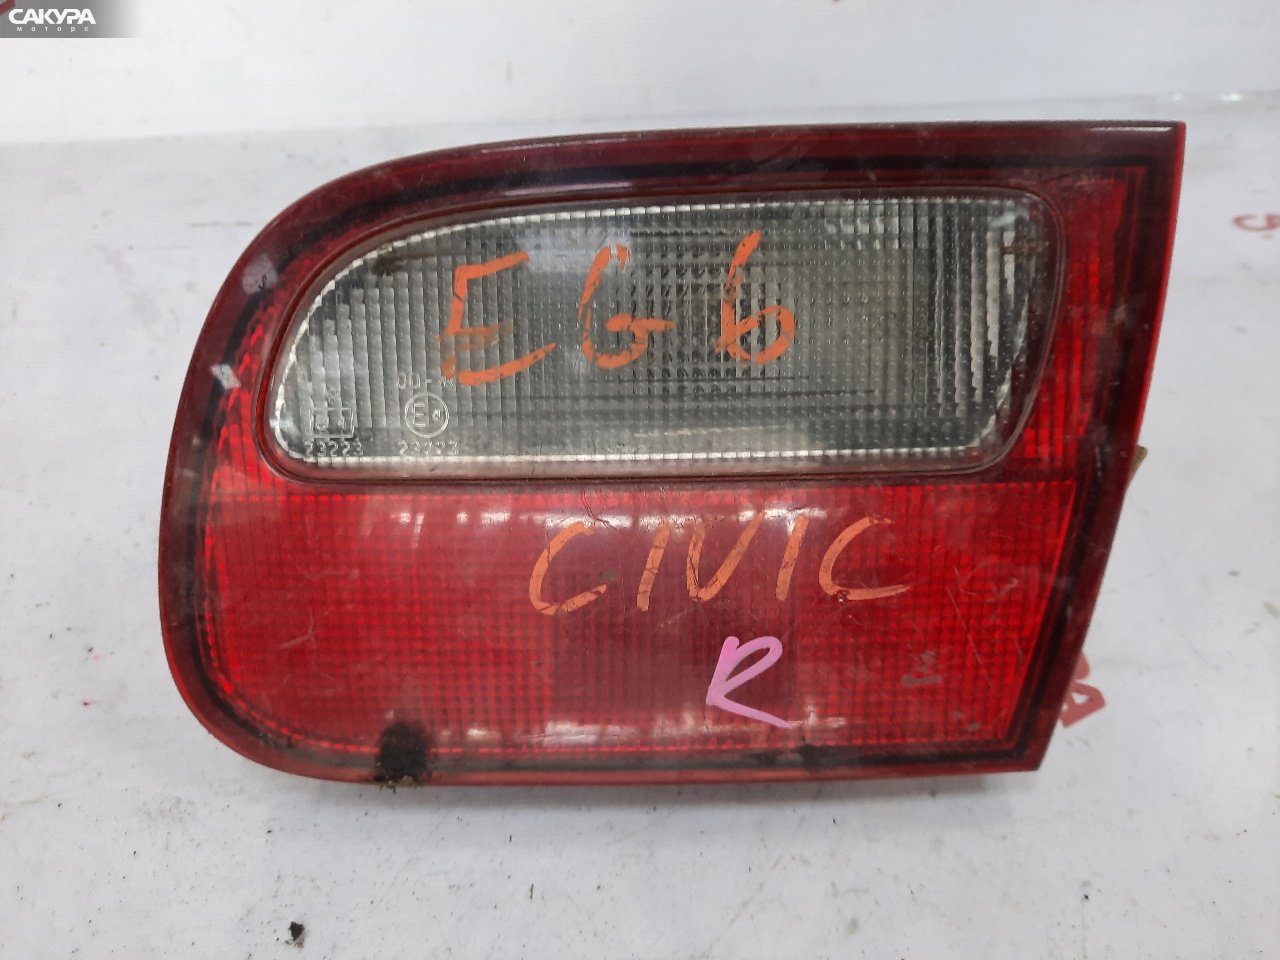 Фонарь вставка багажника правый Honda Civic Ferio EG8: купить в Сакура Красноярск.